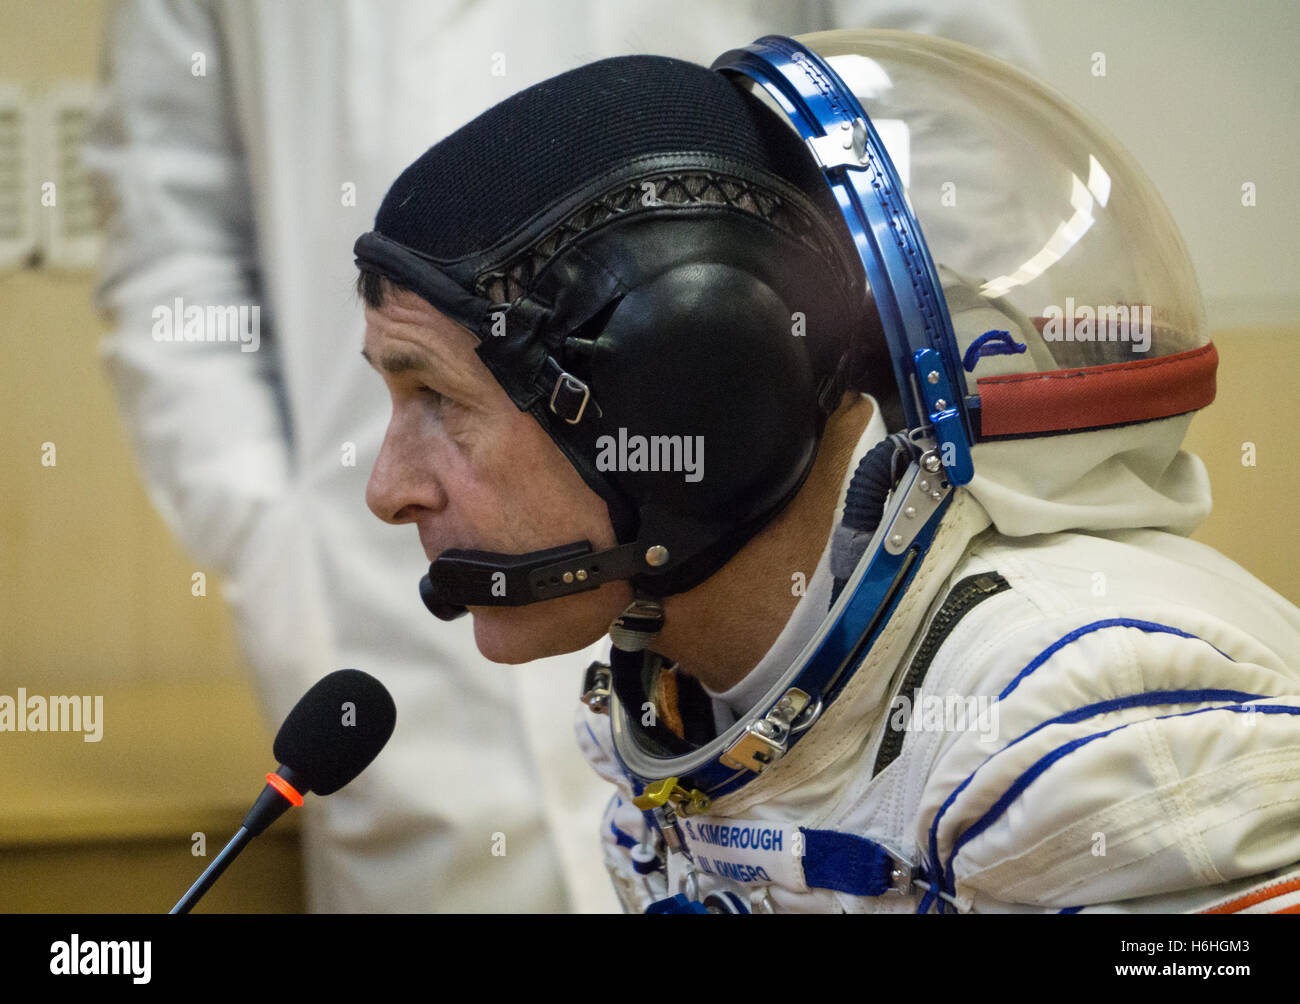 La NASA Stazione Spaziale Internazionale Expedition 49 il primo membro di equipaggio astronauta americano Shane Kimbrough colloqui per la stampa prima della Soyuz MS-02 lancio al cosmodromo di Baikonur Ottobre 19, 2016 di Baikonur in Kazakhstan. Foto Stock